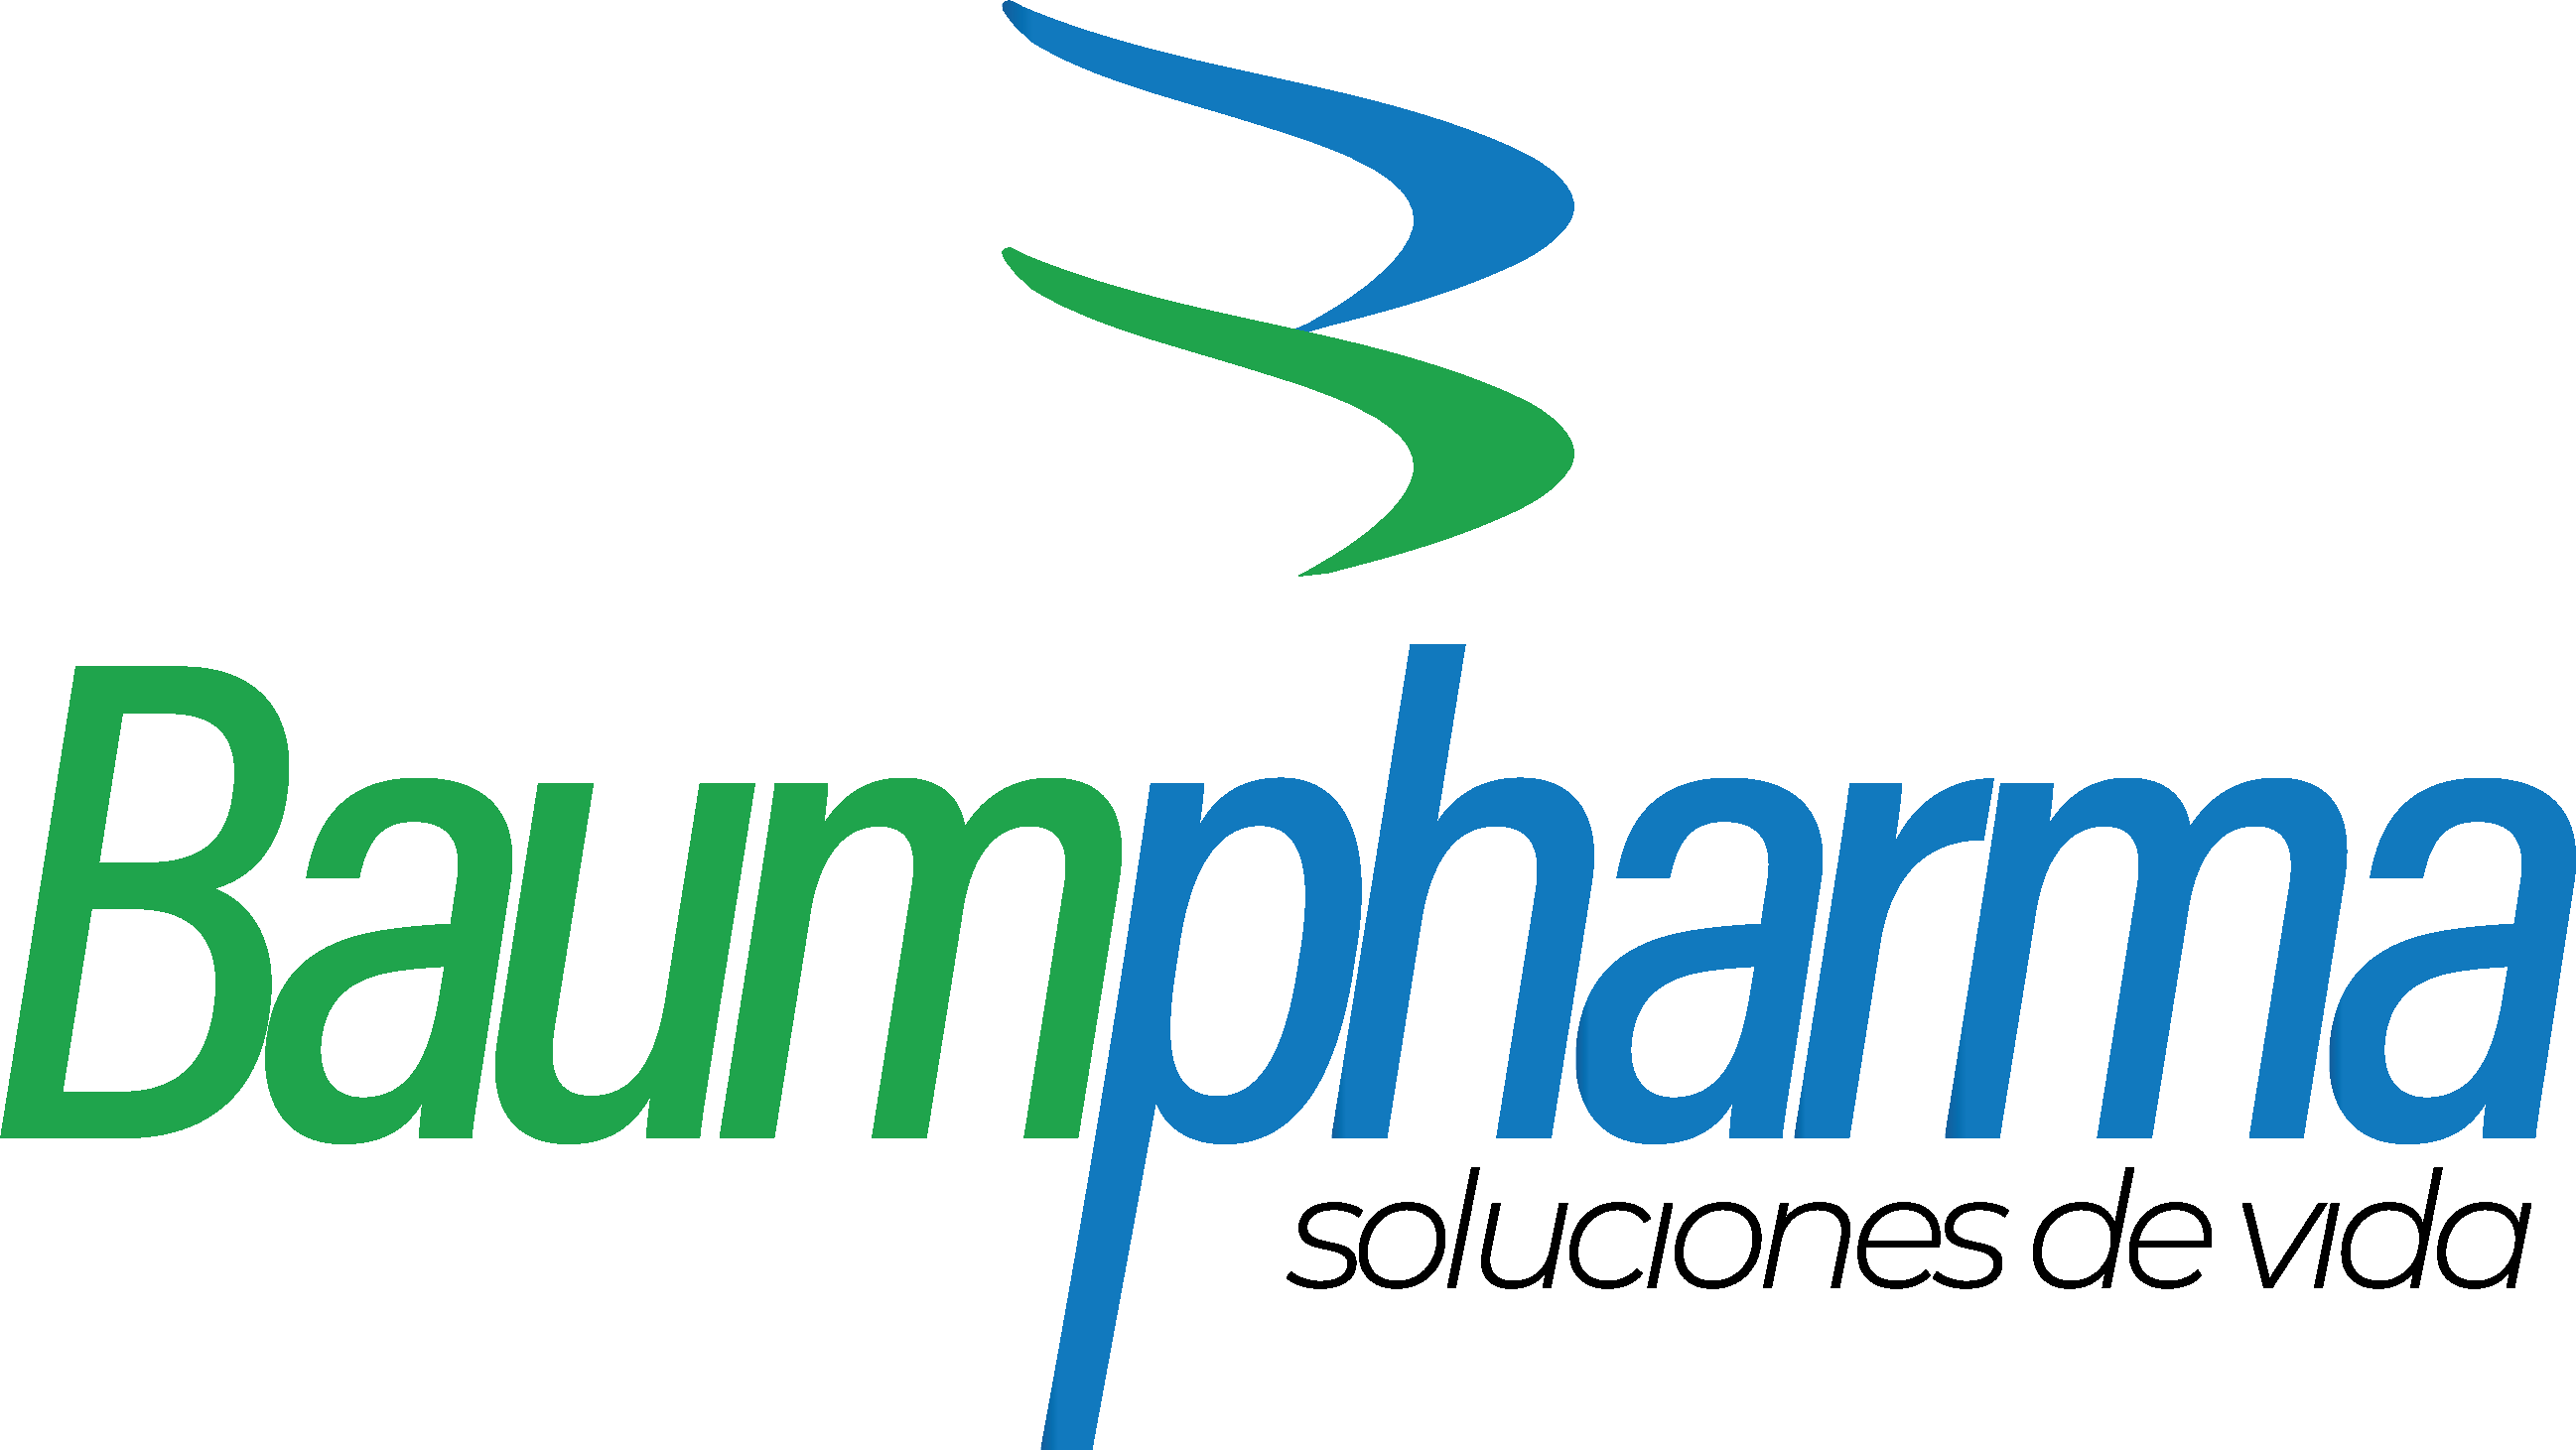 Baumpharma s.a.s - Distribuidor de Medicamentos y Dispositivos Médicos